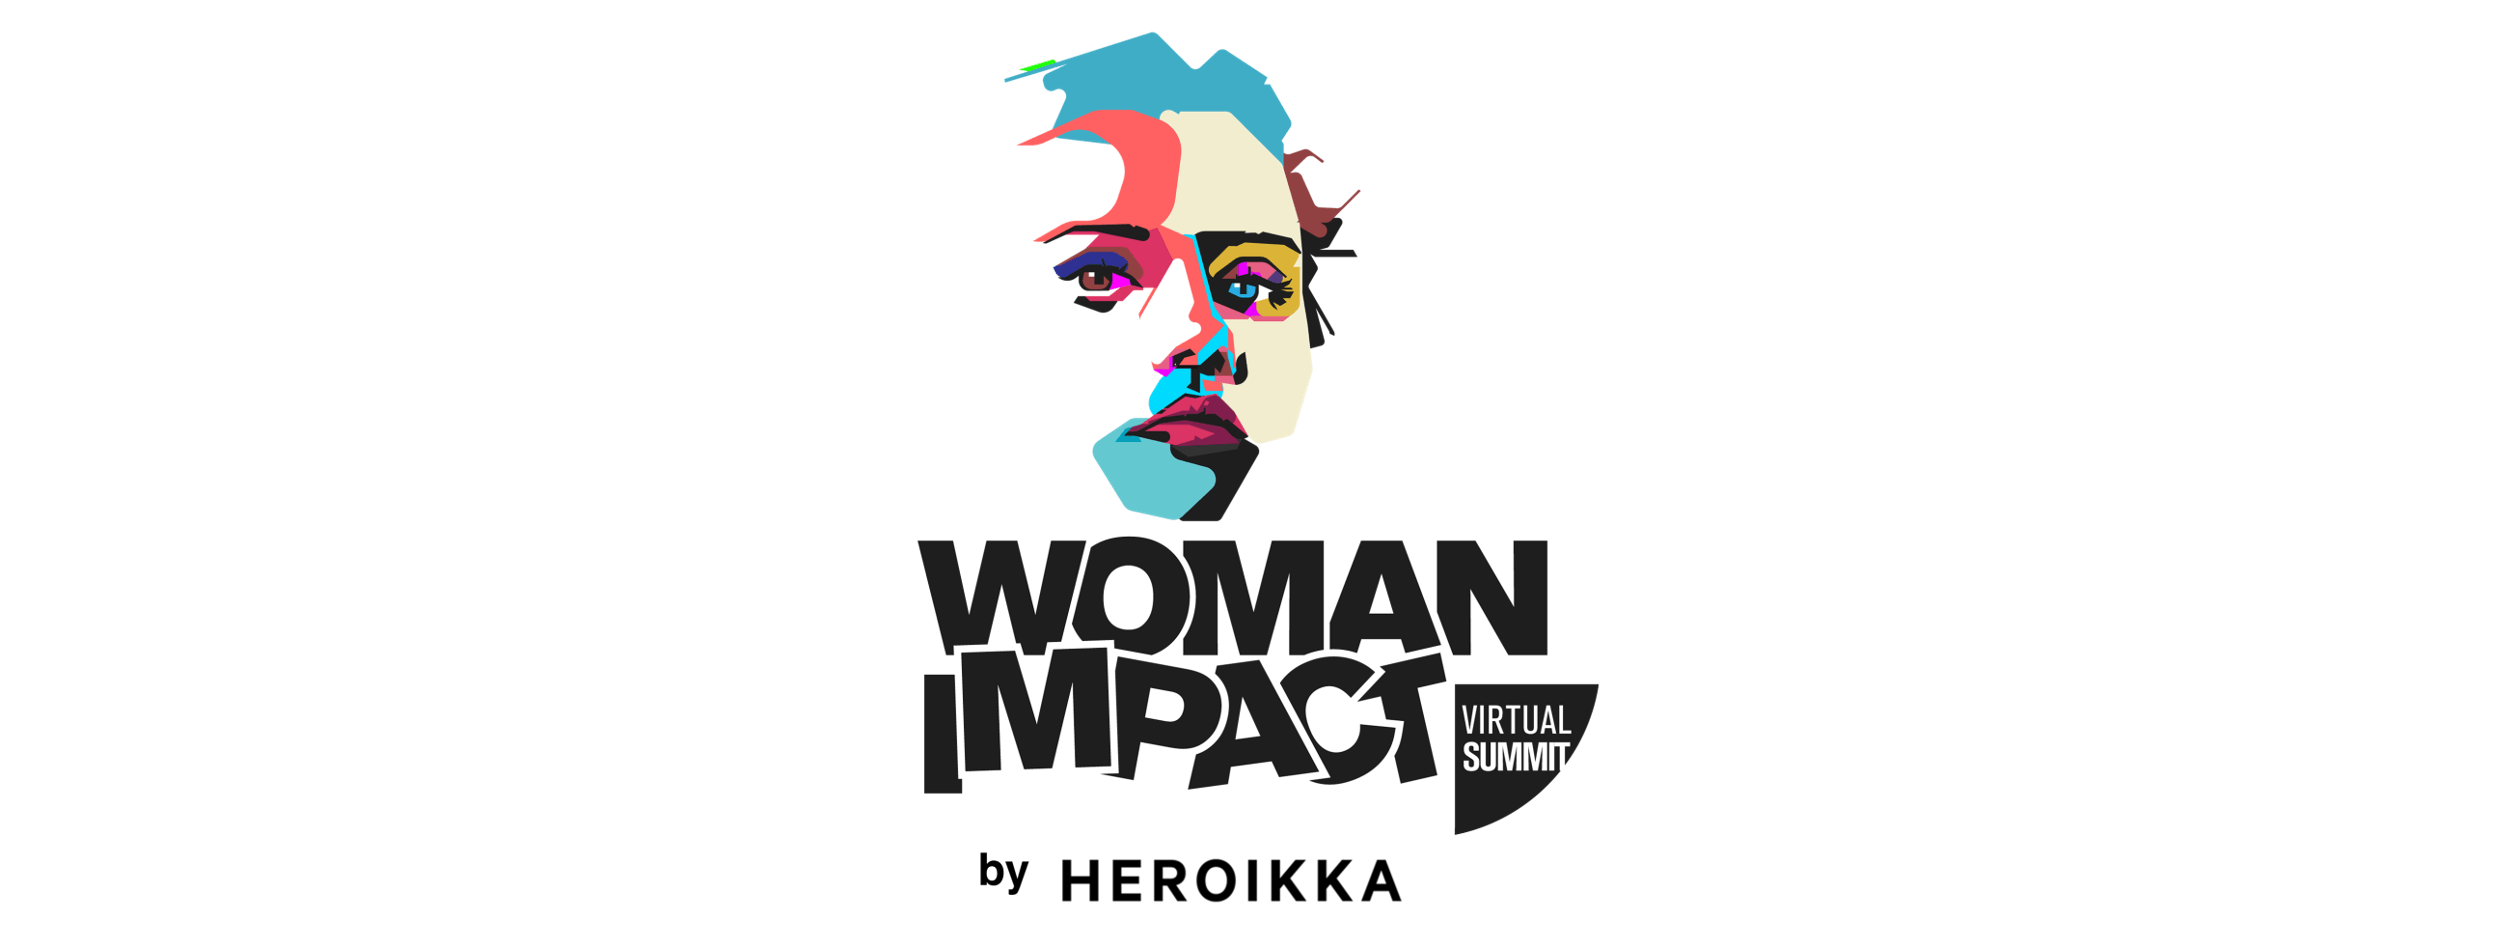 Woman Impact Summit - Heroikka